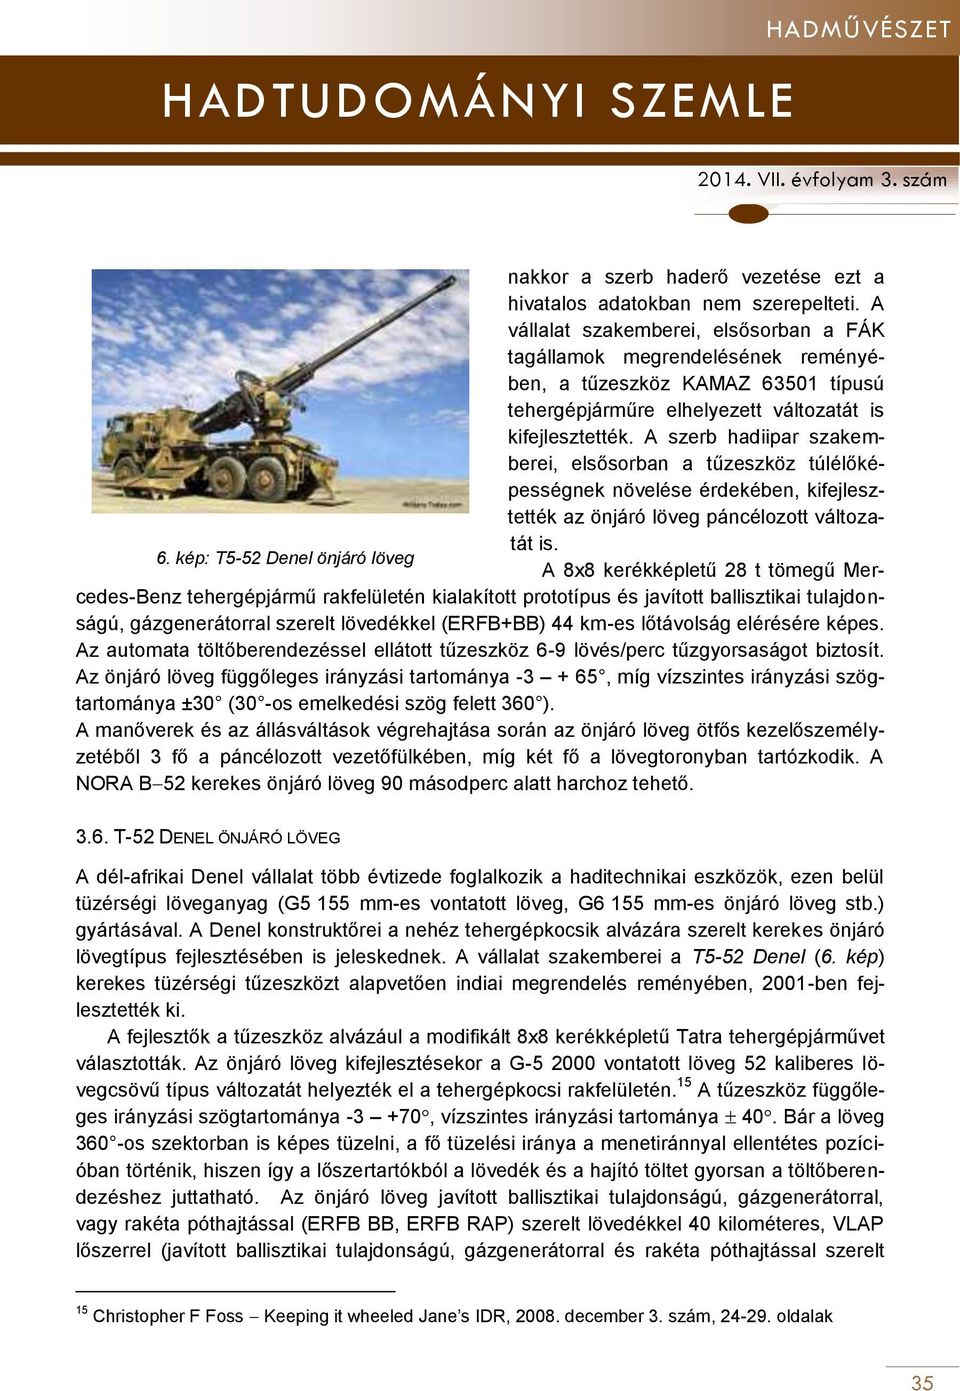 A szerb hadiipar szakemberei, elsősorban a tűzeszköz túlélőképességnek növelése érdekében, kifejlesztették az önjáró löveg páncélozott változatát is. 6.